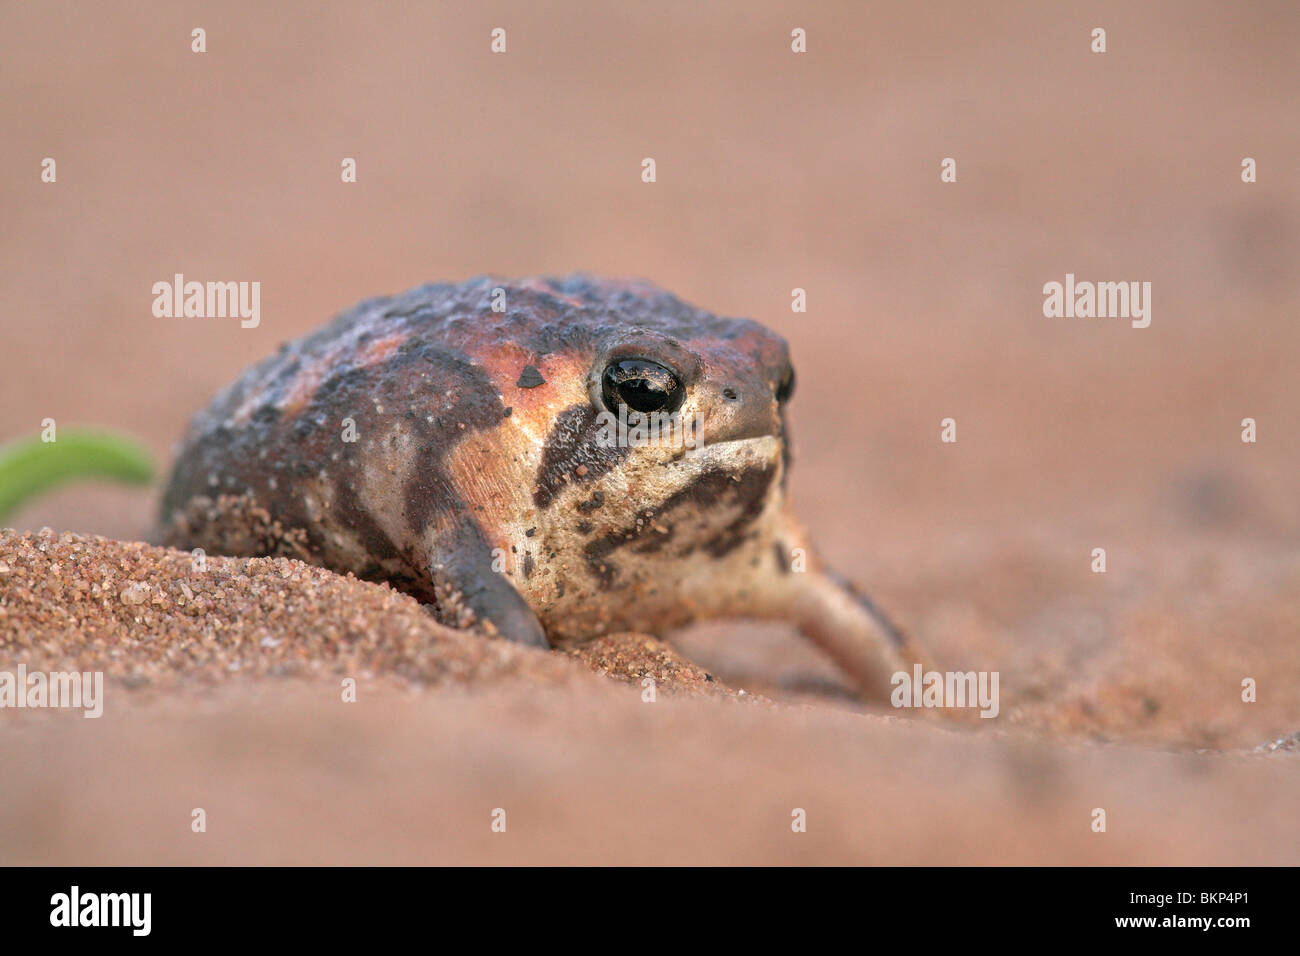 Foto de una sabana arbolada rainfrog sobre arena. Foto de stock